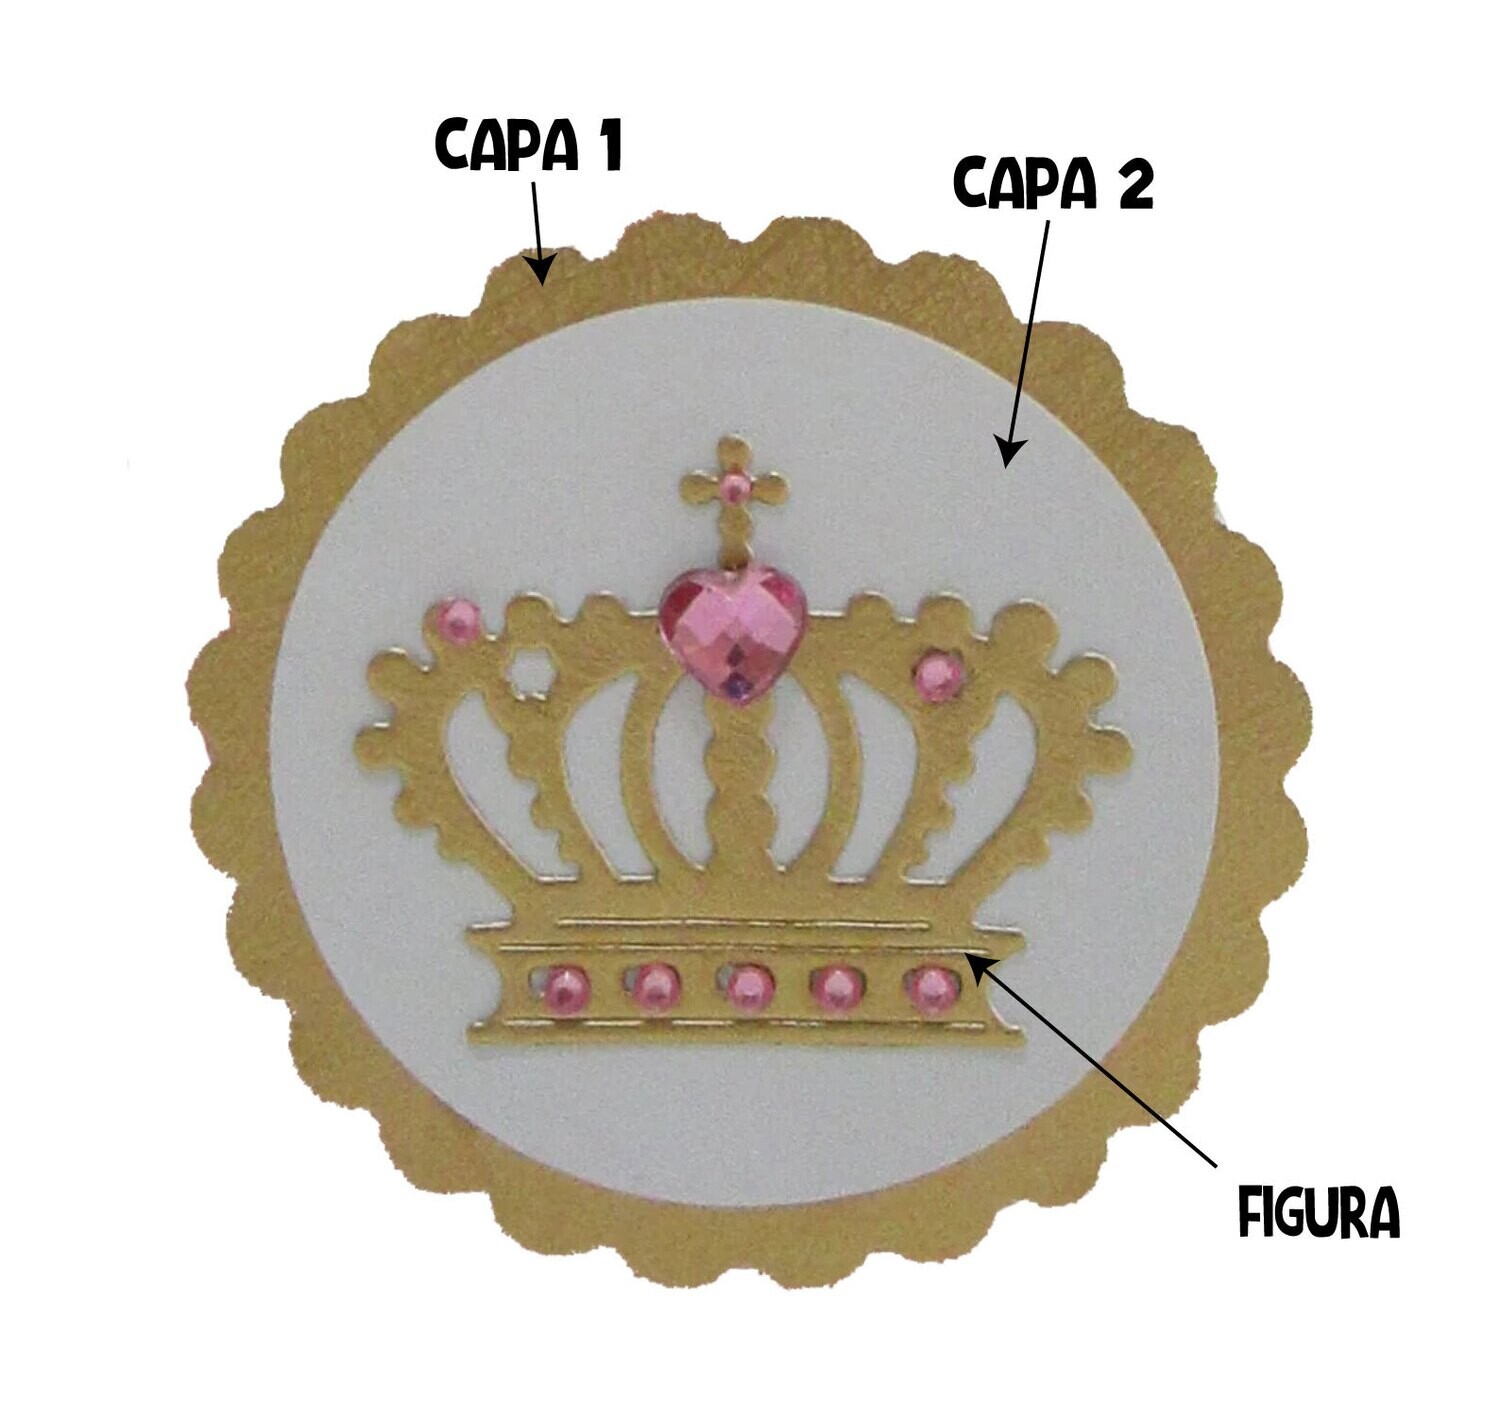 20 Sets Coronas Princesa Decoracion cajitas o souvenirs